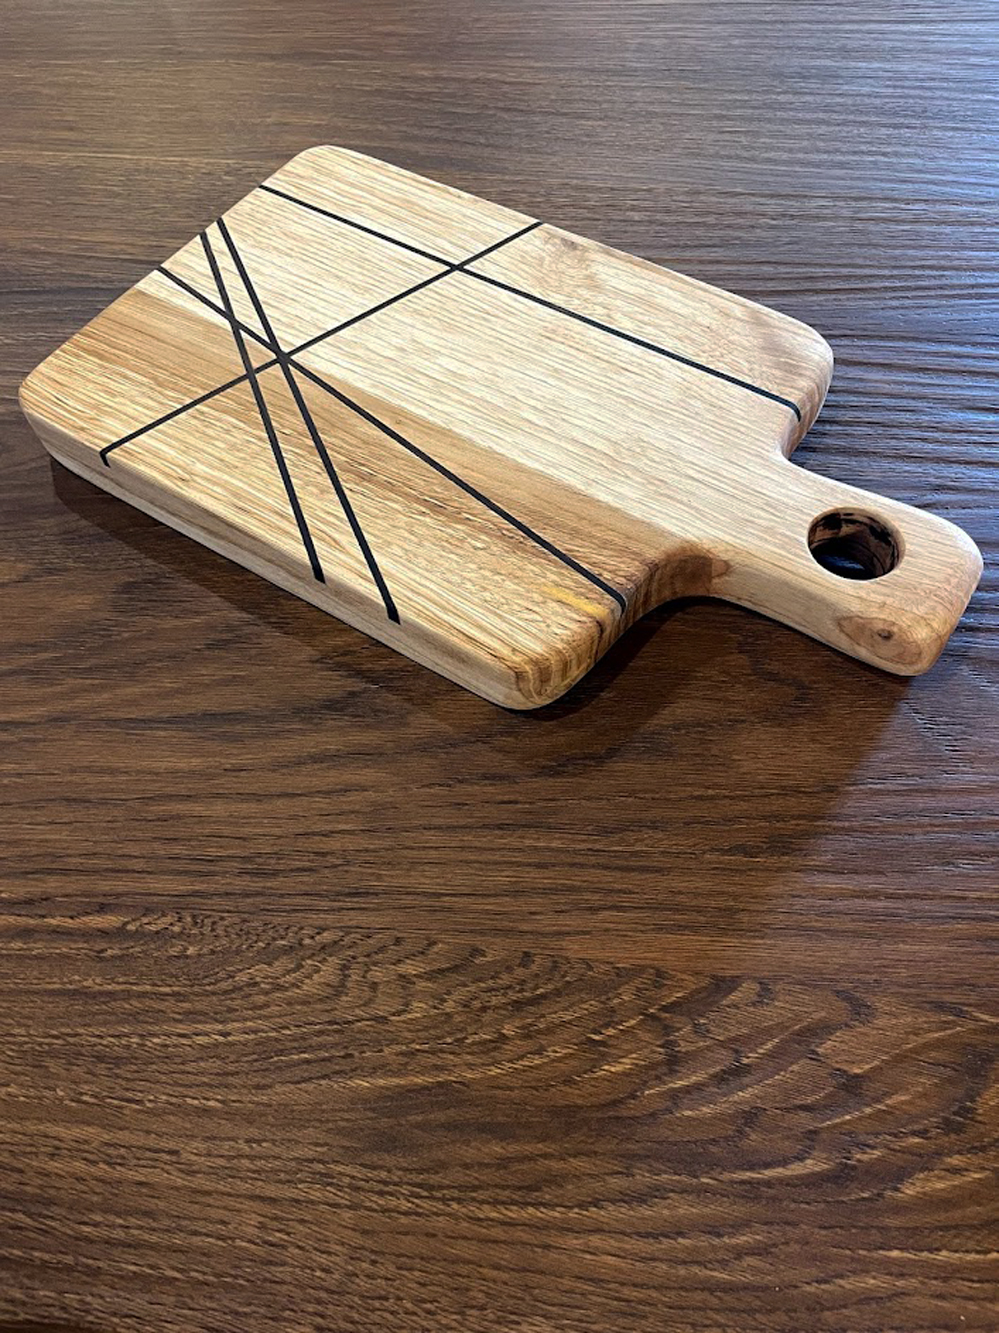 Tagliere da cucina in legno massello fatto a mano - Barcode - XLAB Design